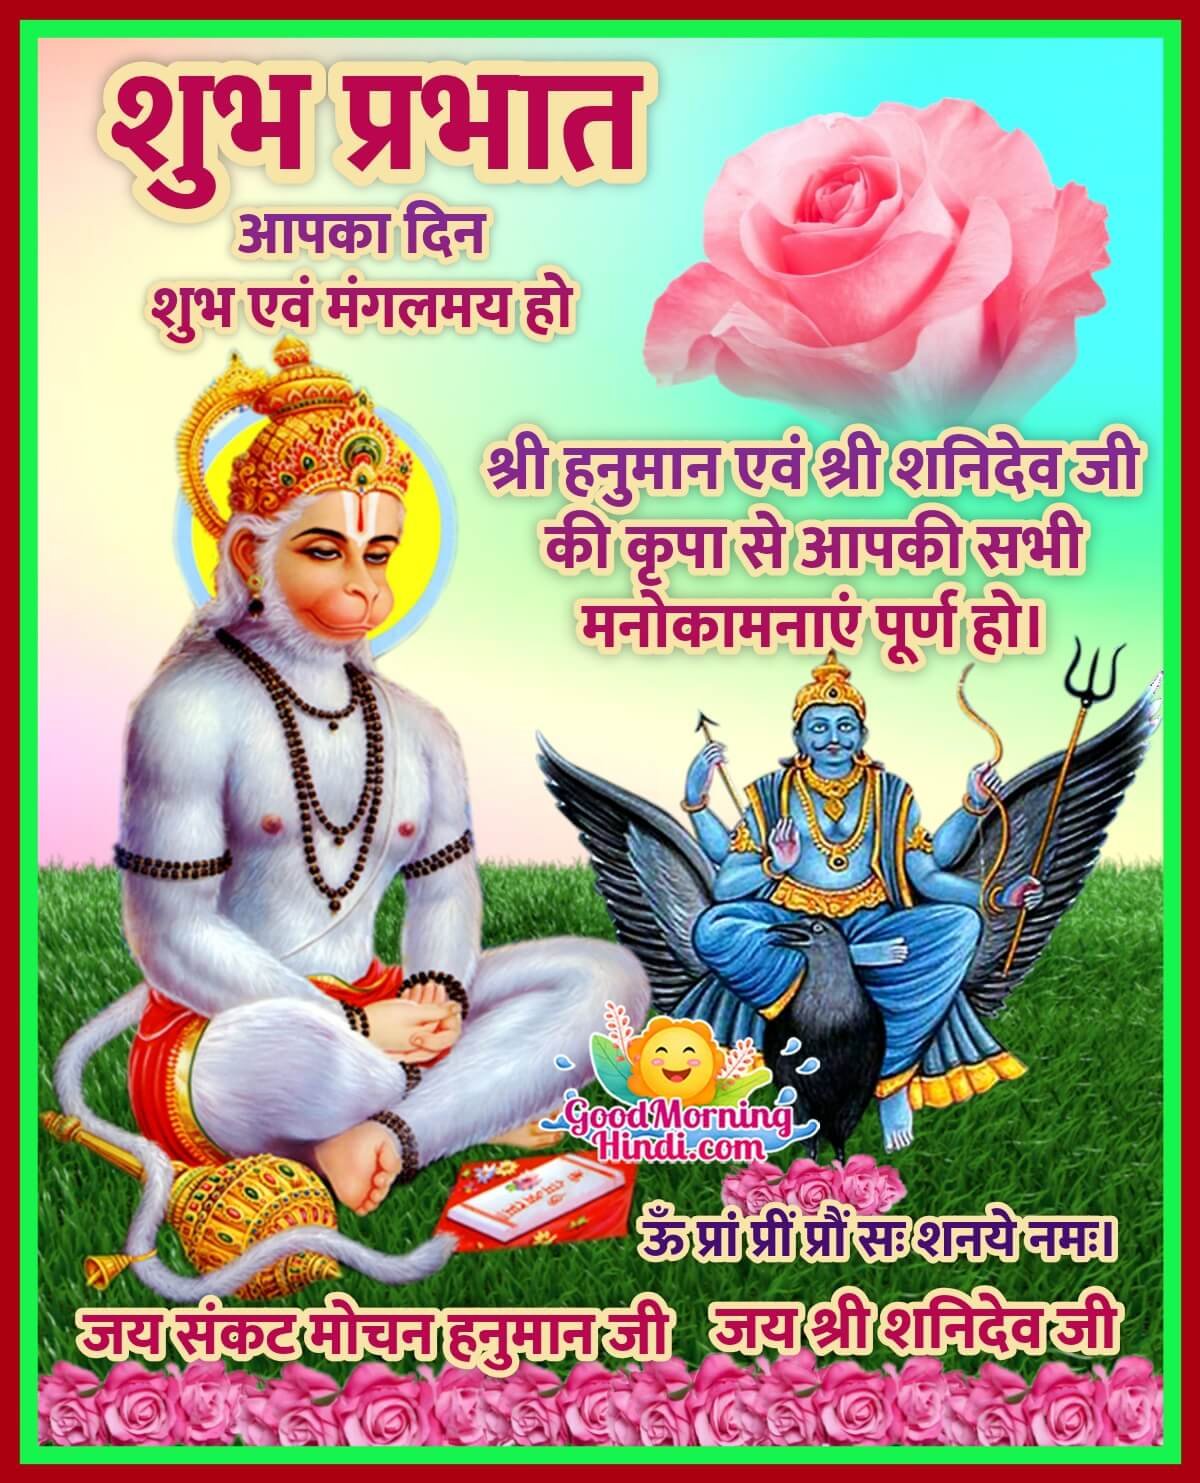 Good morning Hindu God Images In Hindi